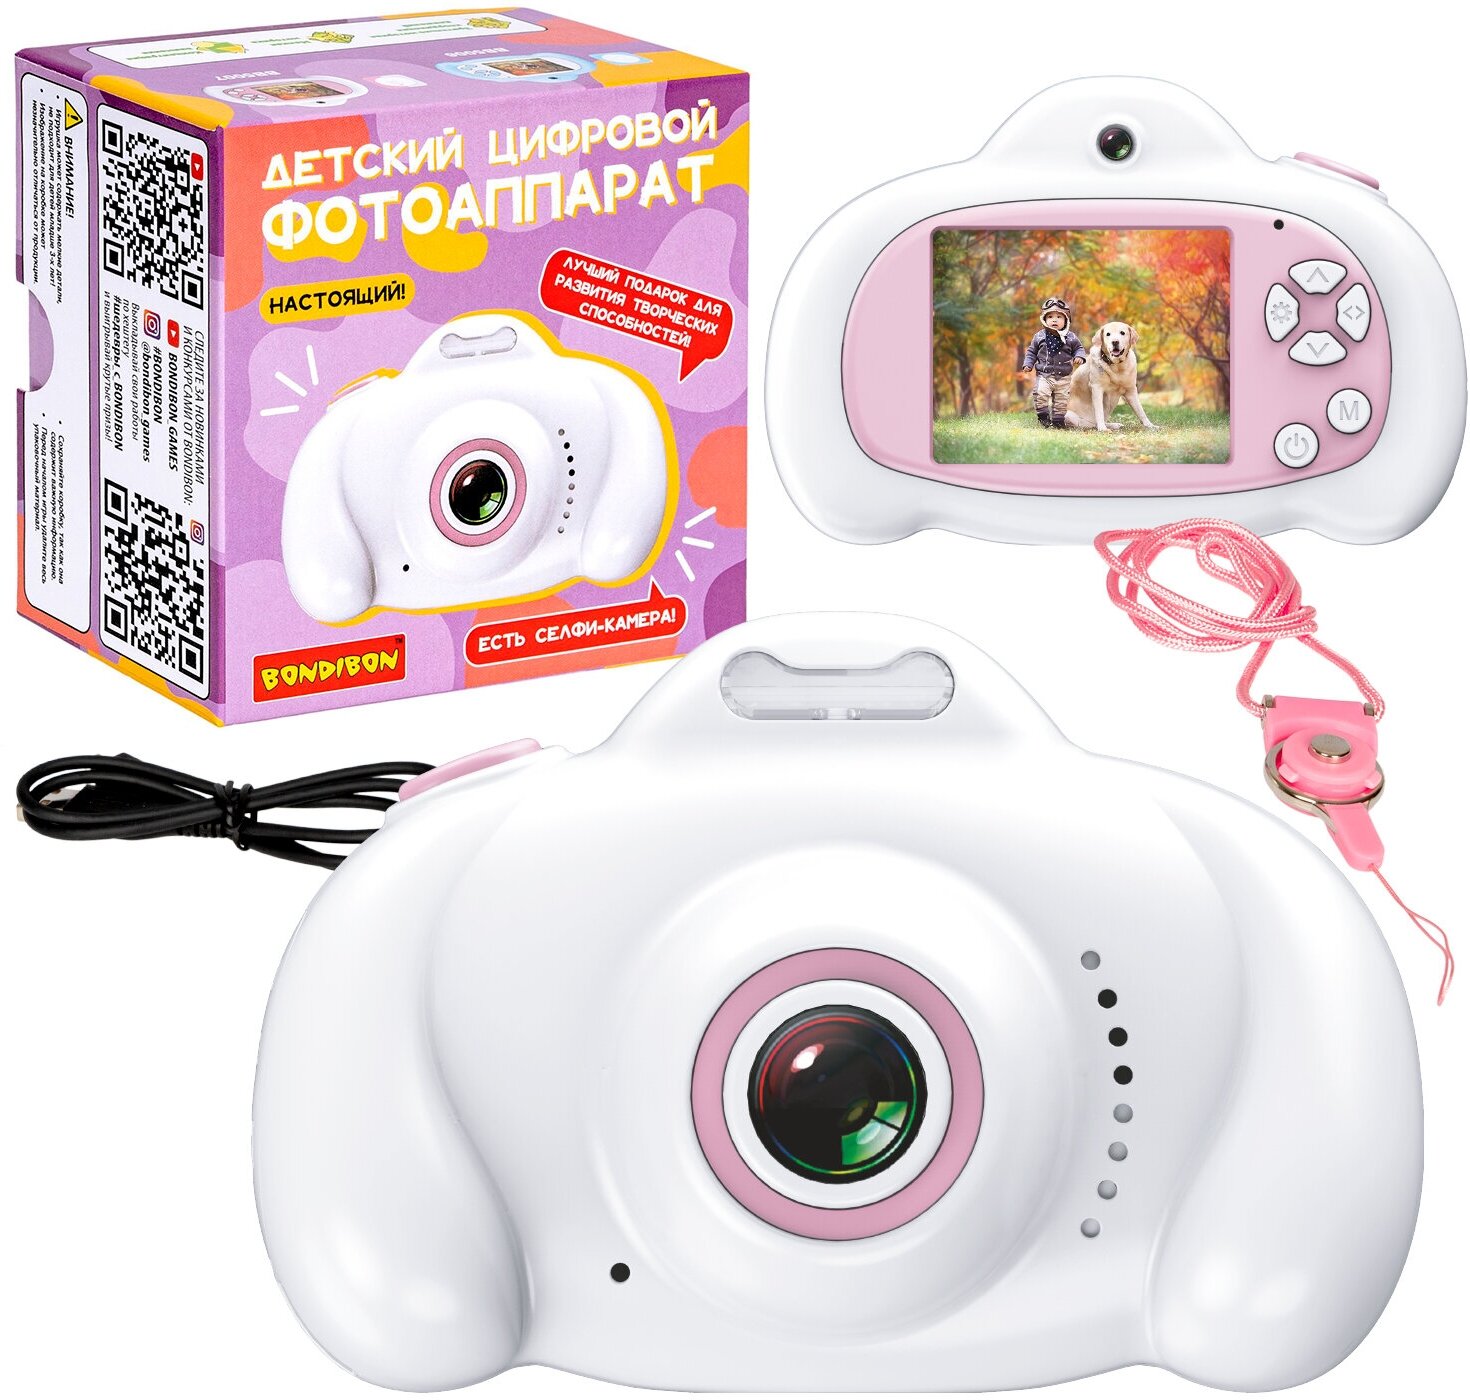 Детский цифровой фотоаппарат с селфи камерой, белый, видео, фотосьемка, пять игр, музыка, фоторамки, стикеры Bondibon. ВВ5007